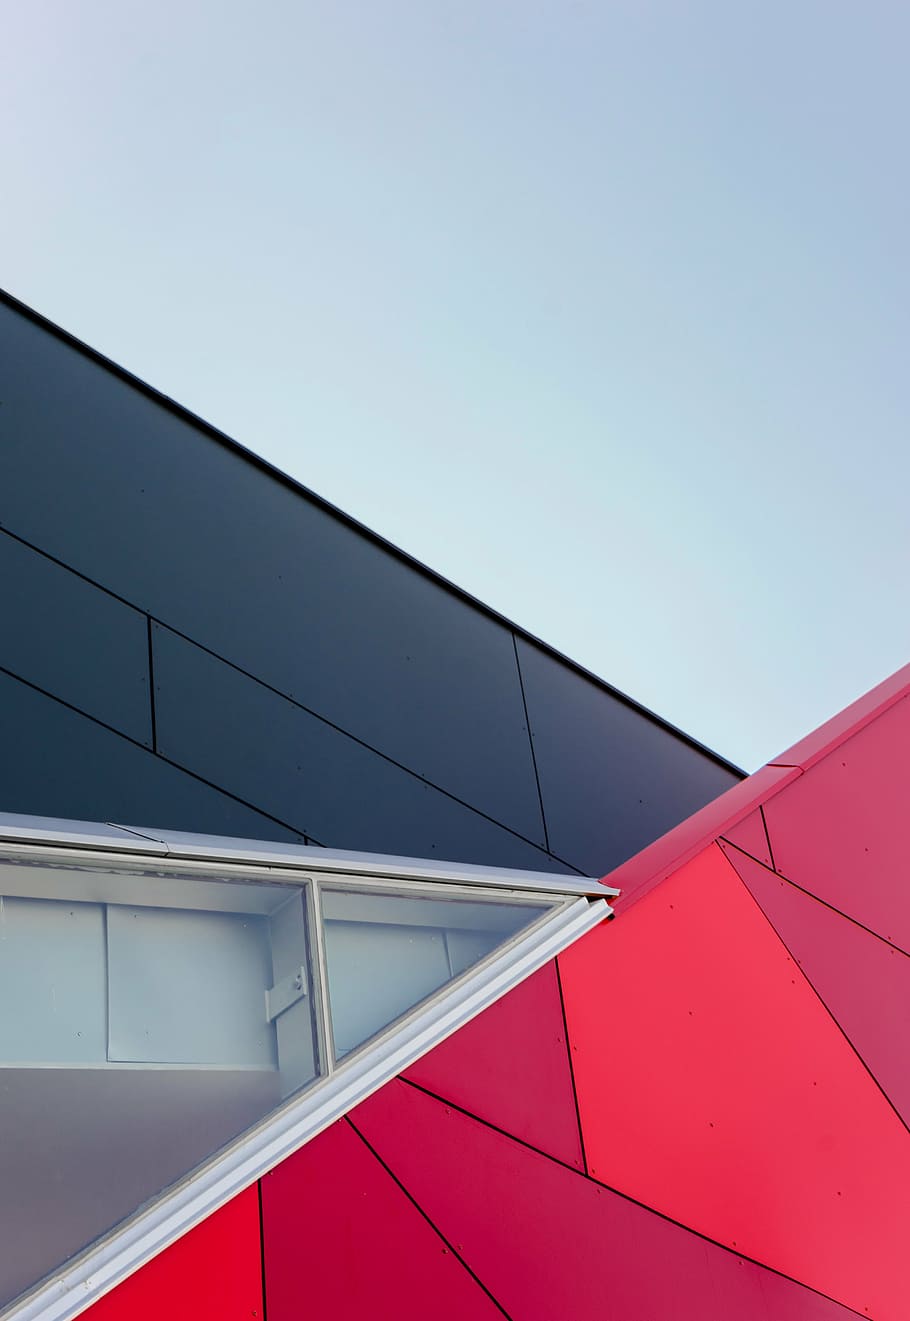 vermelho, preto, construção de vidro, escuro, nuvens, arquitetura, construção, infra-estrutura, janela, moderna